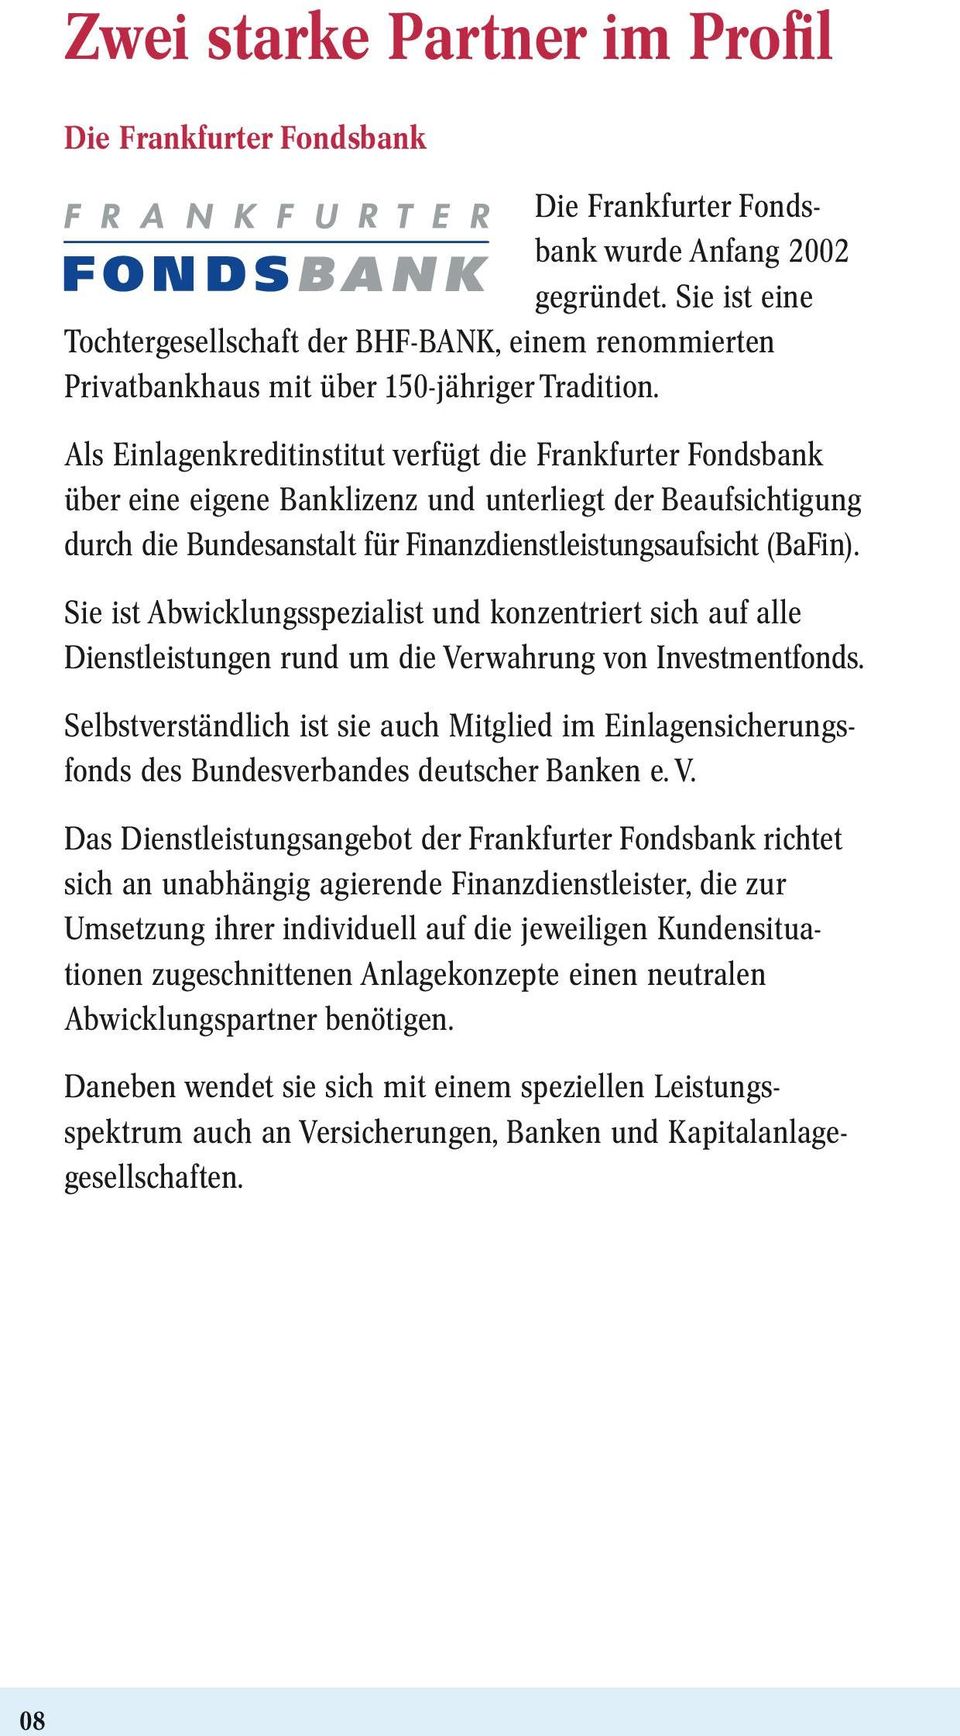 Als Einlagenkreditinstitut verfügt die Frankfurter Fondsbank über eine eigene Banklizenz und unterliegt der Beaufsich tigung durch die Bundesanstalt für Finanzdienstleistungsaufsicht (BaFin).